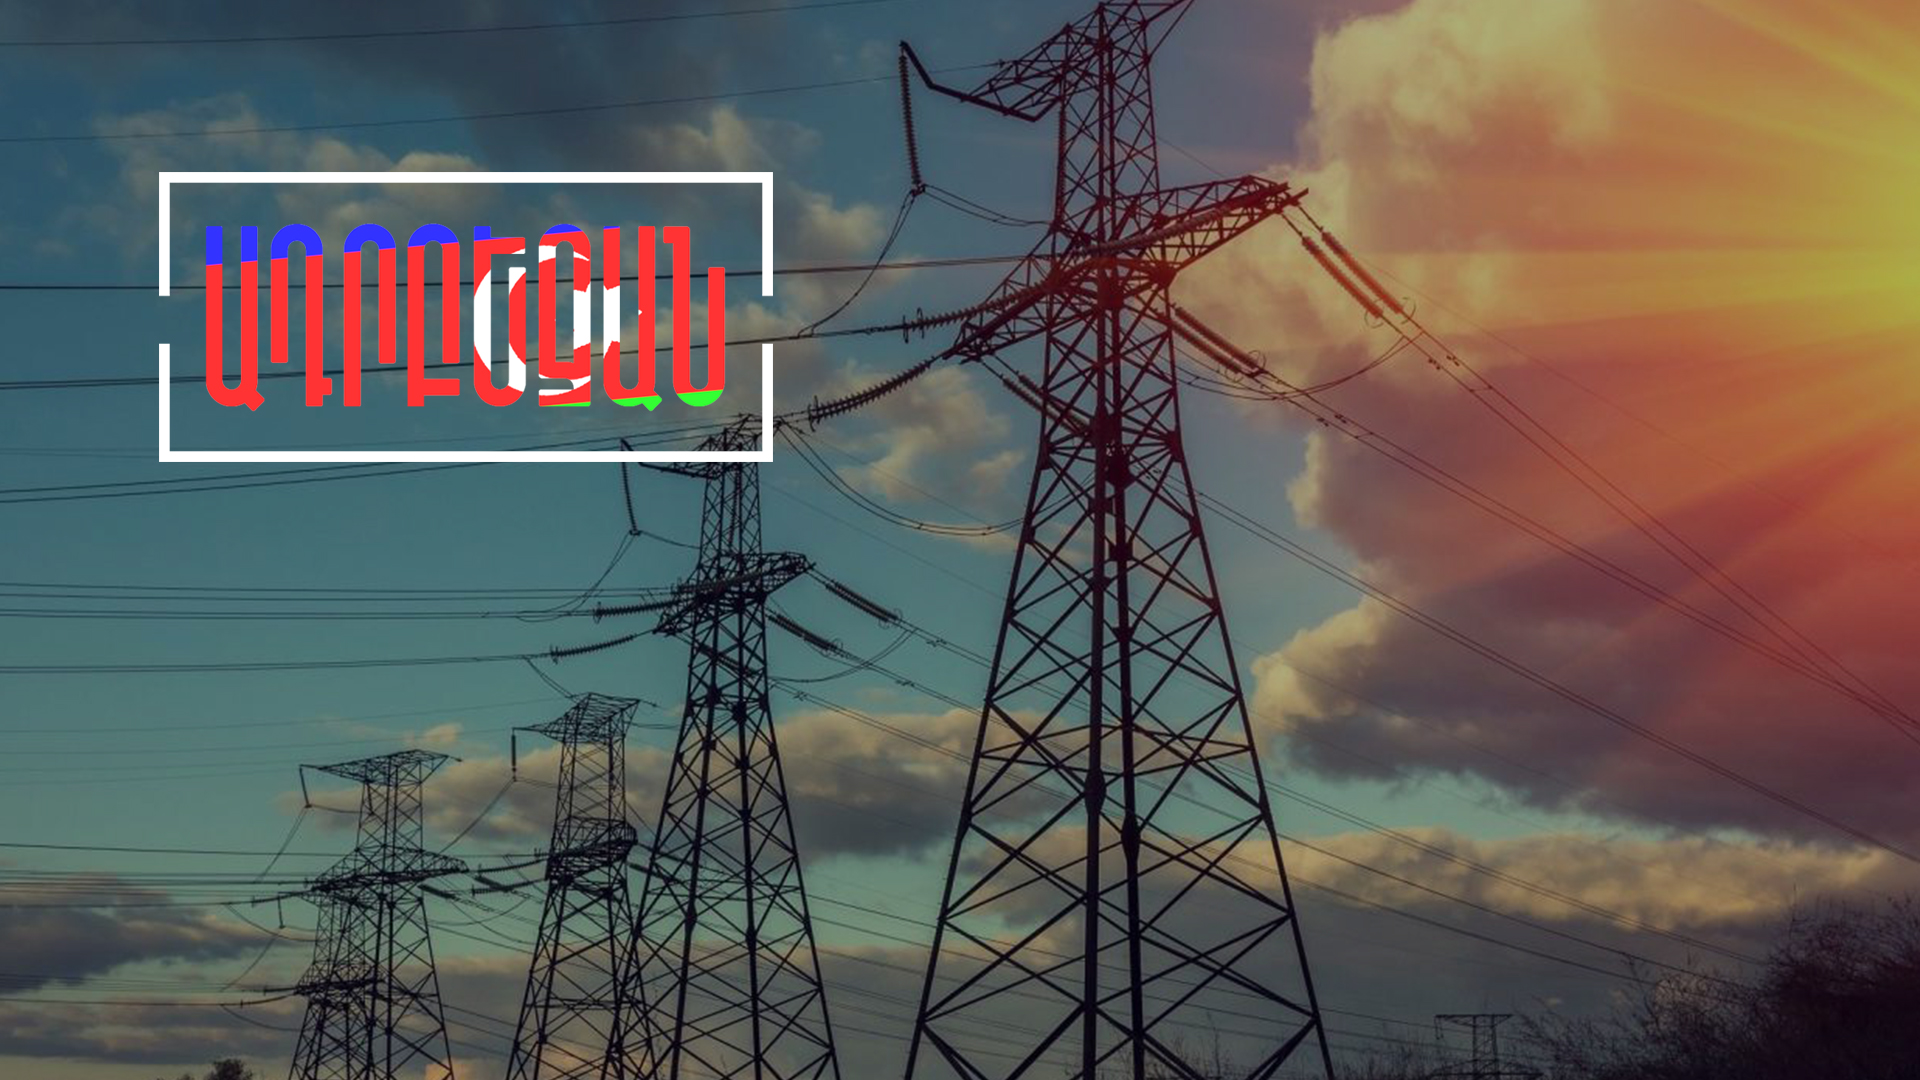 Ալիևն ուզում է ադրբեջանական էլեկտրաէներգիան Հայաստանի տարածքով տանել Նախիջևան ու Եվրոպա